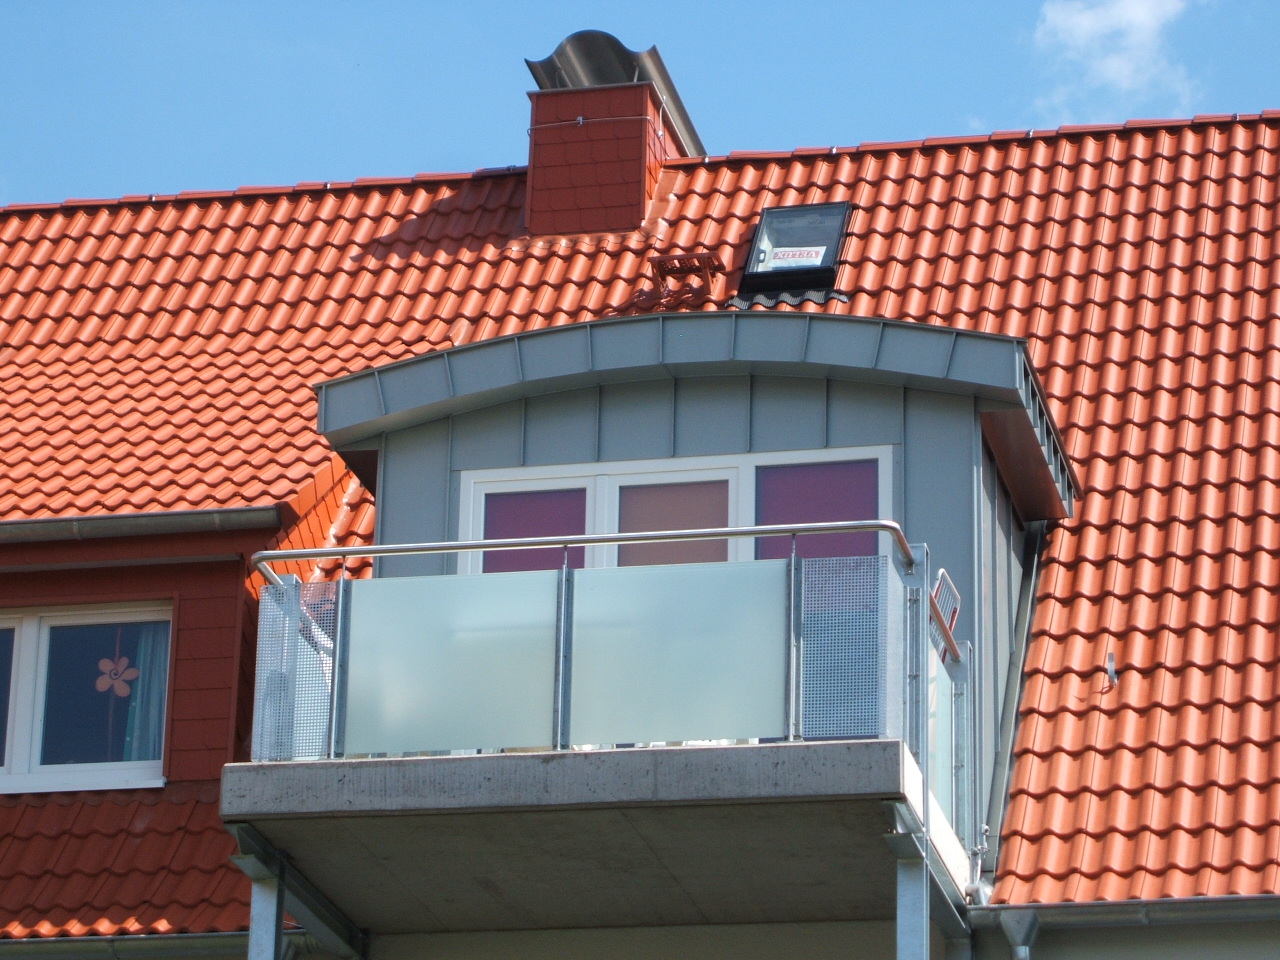 Segmentbogengaube mit Balkon